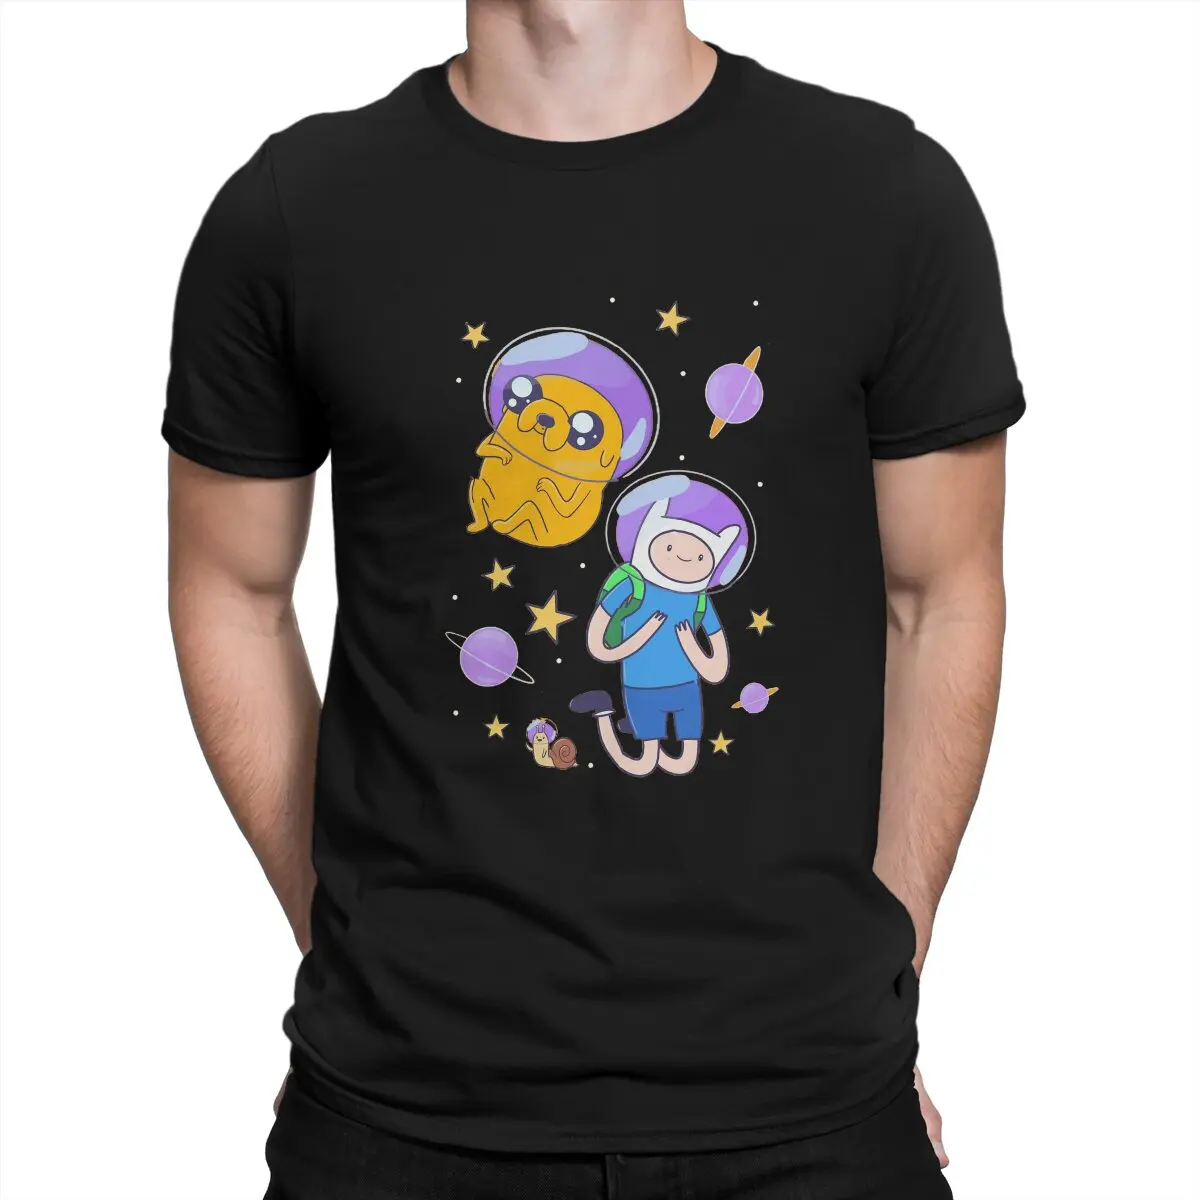 

Футболка мужская с графическим принтом, винтажная Альтернативная летняя рубашка из полиэстера, с рисунком сериала «Время приключений» и космических исследований